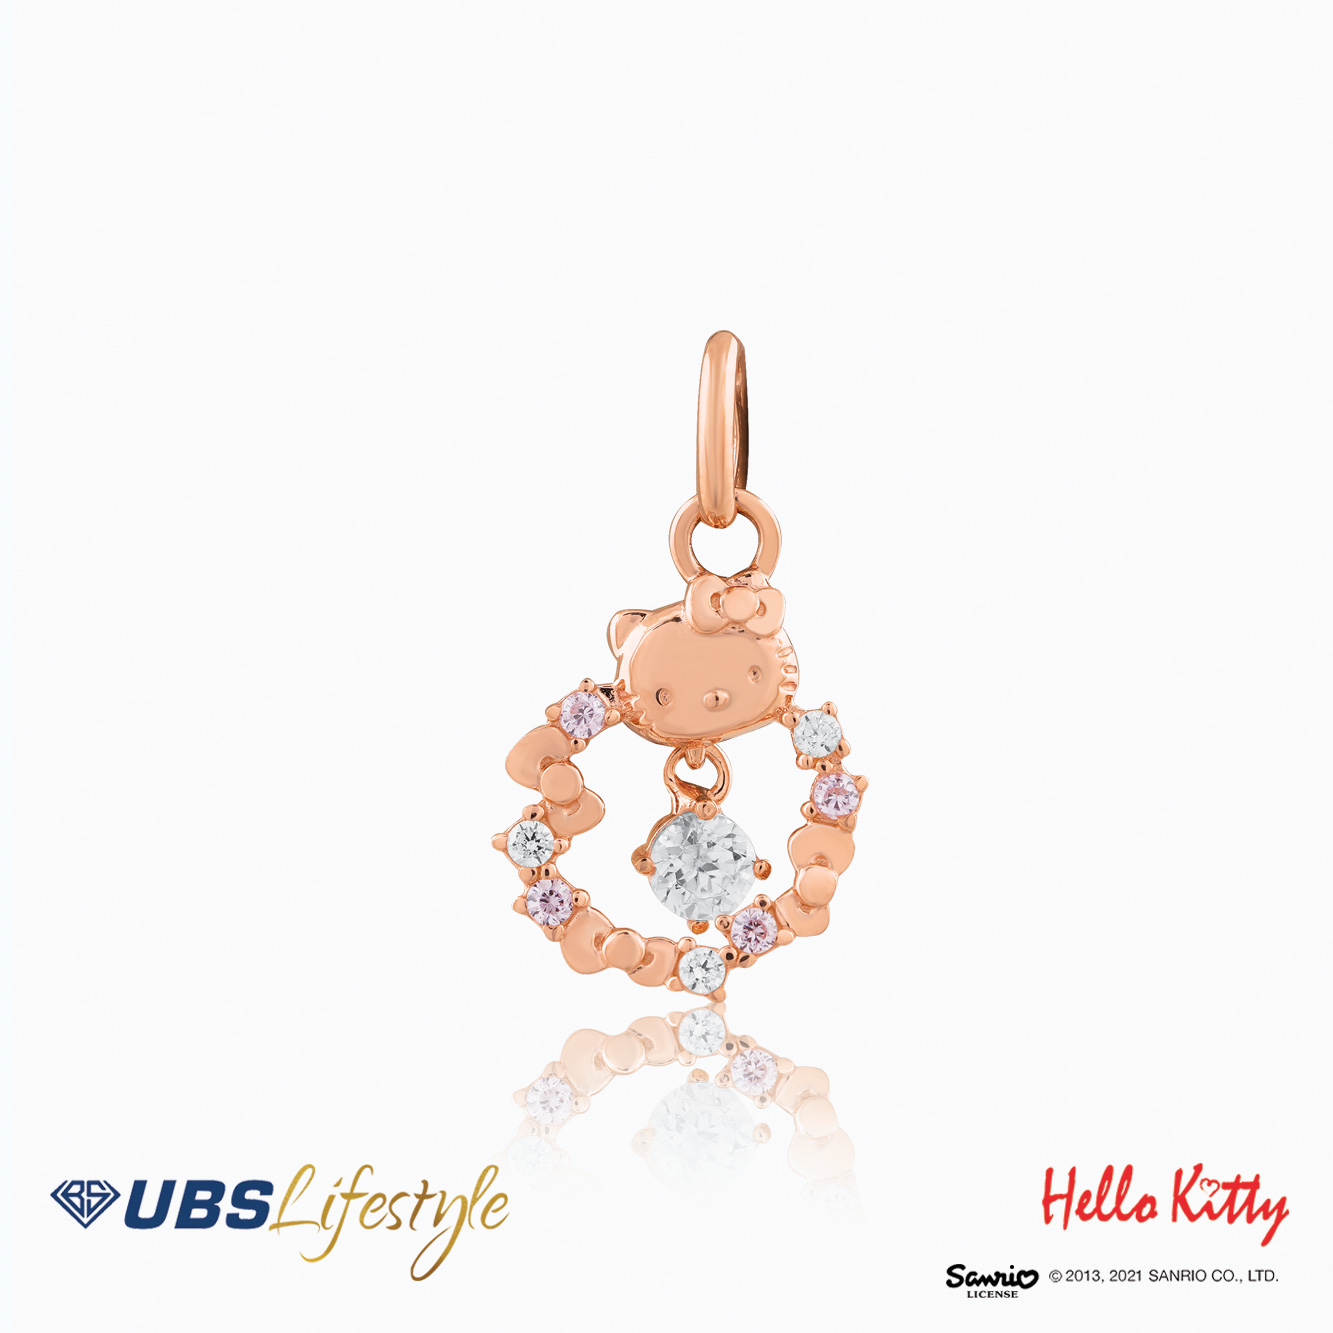 UBS Liontin Emas Sanrio Hello Kitty - Clz0007 - 17K